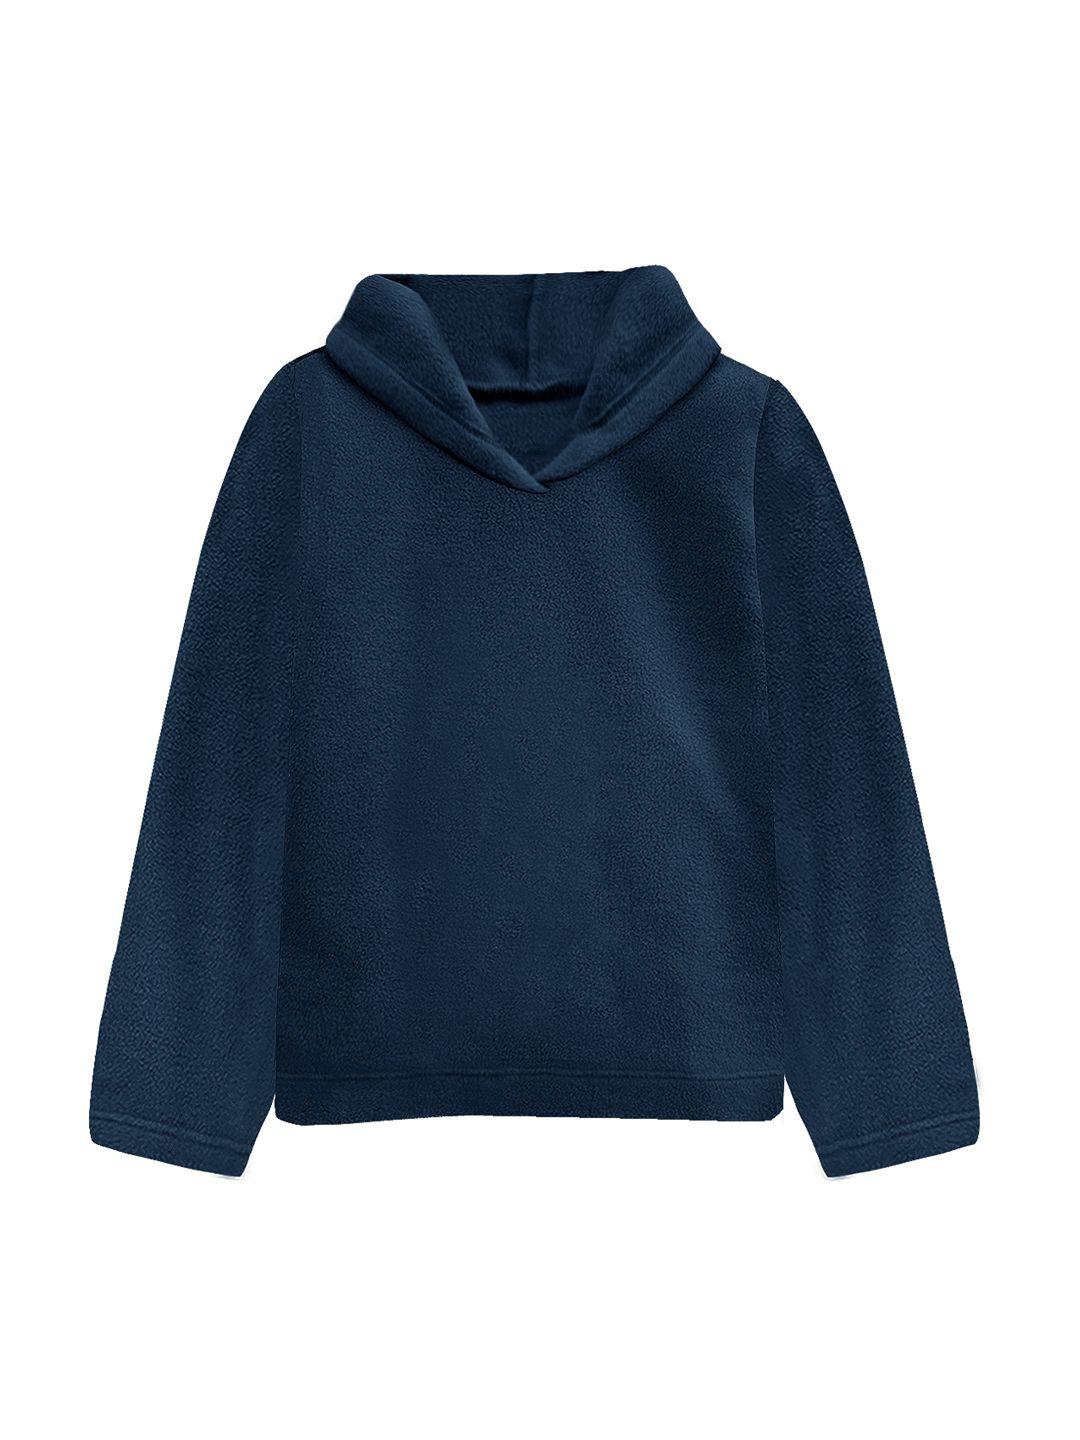 a.t.u.n. women navy blue hooded sweatshirt